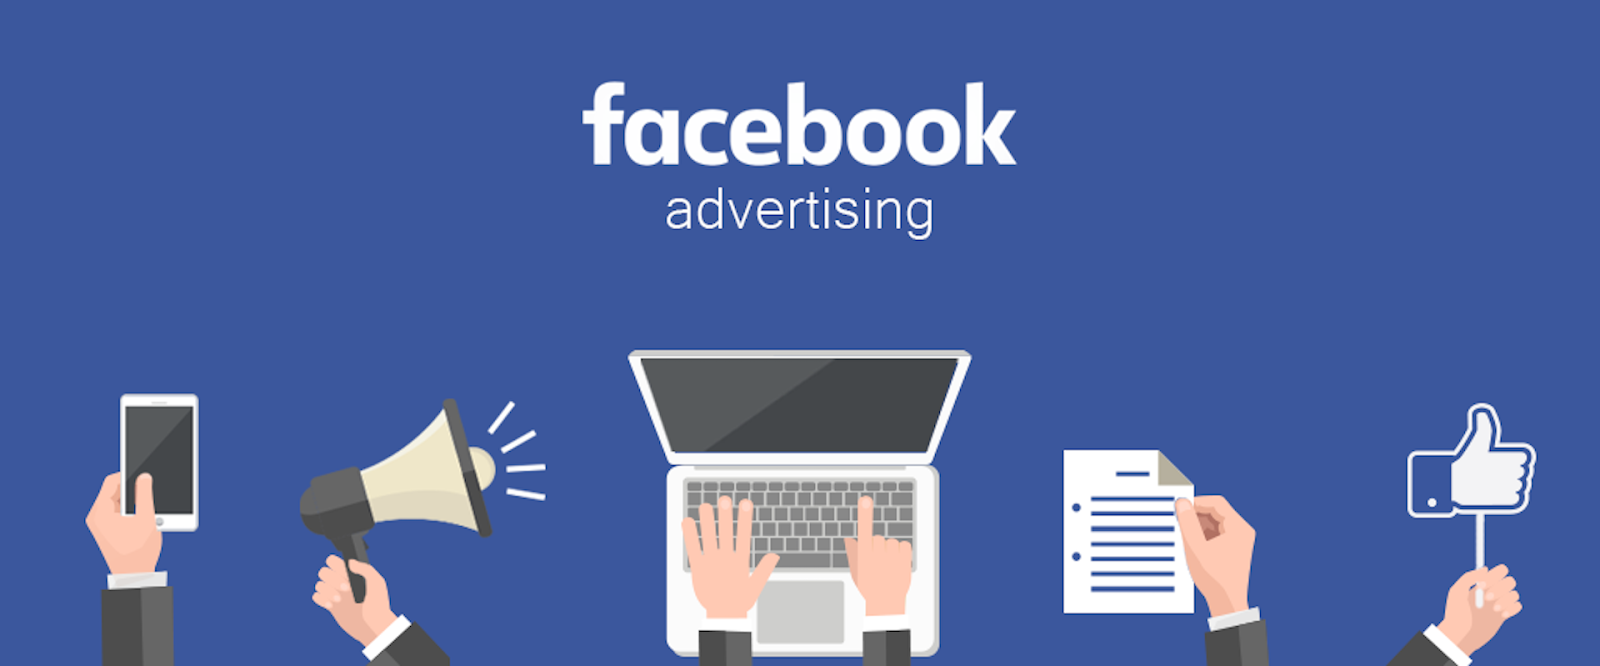 Đến đây chắc hẳn bạn sẽ thắc mắc làm sao ở Việt Nam có thể trả tiền quảng cáo cho các kênh Facebook?